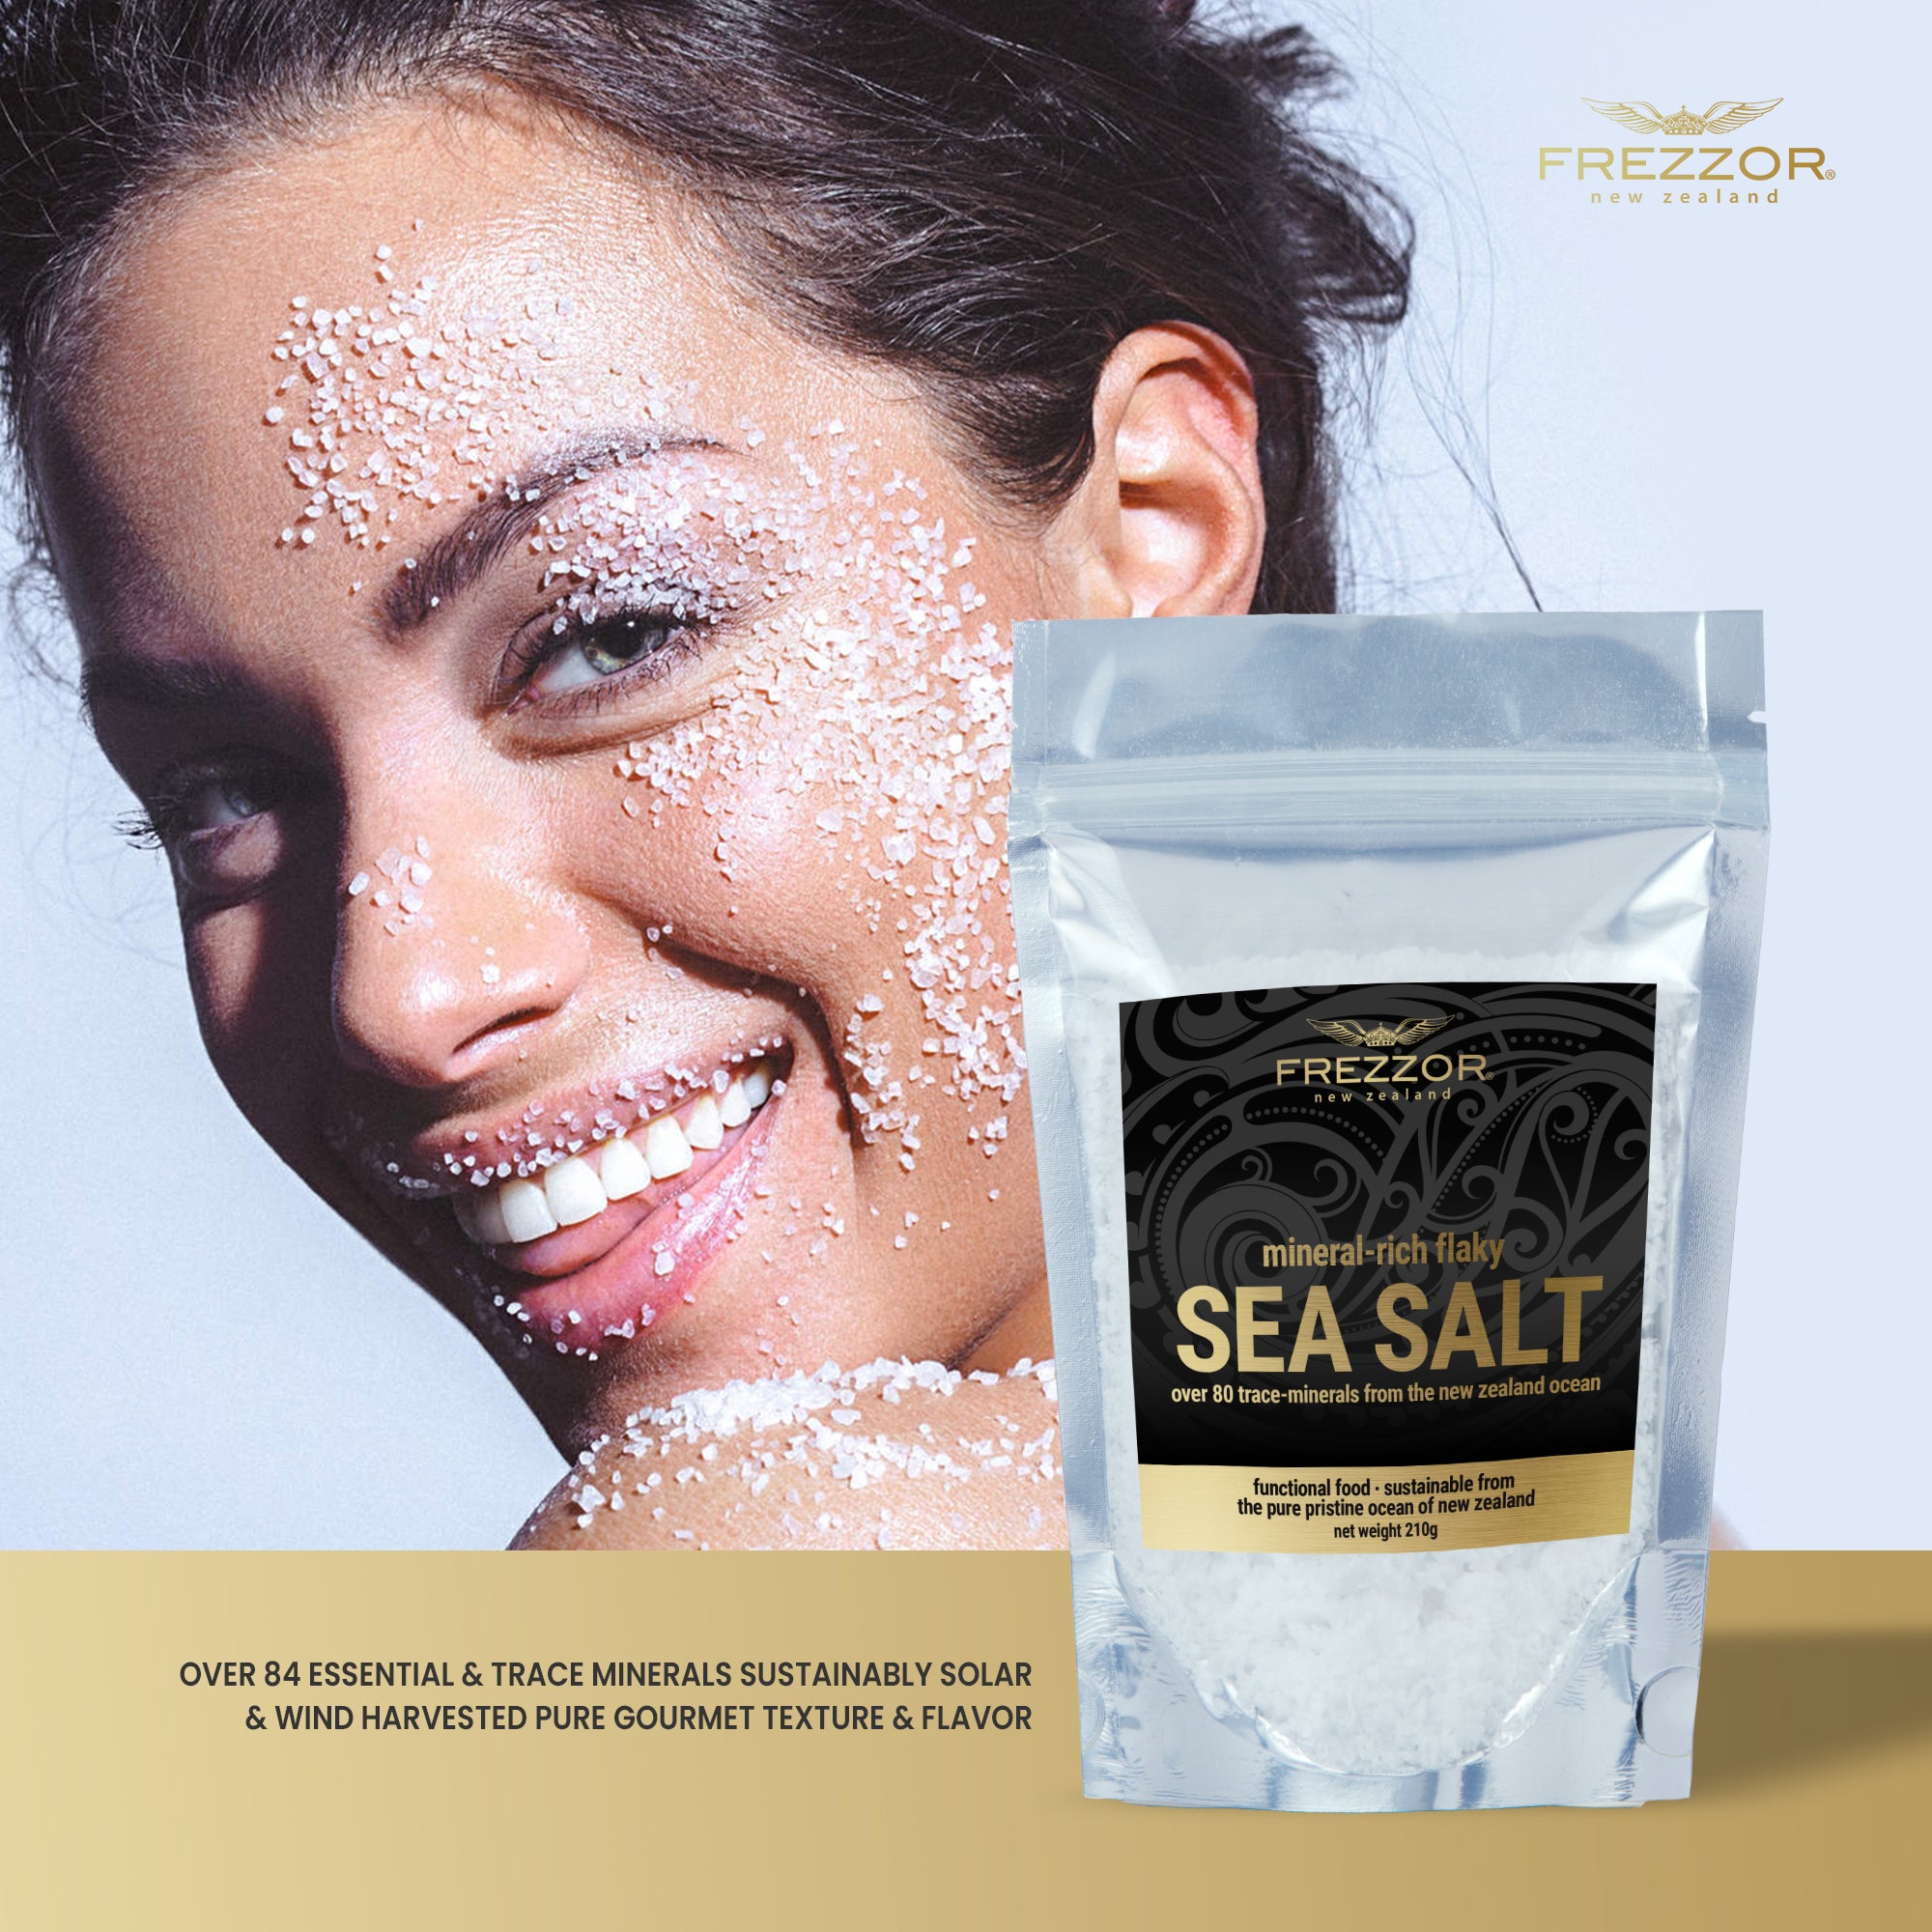 Flaky Sea Salt Pouch  FREZZOR FREZZOR Mineral-Rich Flaky Sea Salt  | NZ Sea Salt Powder